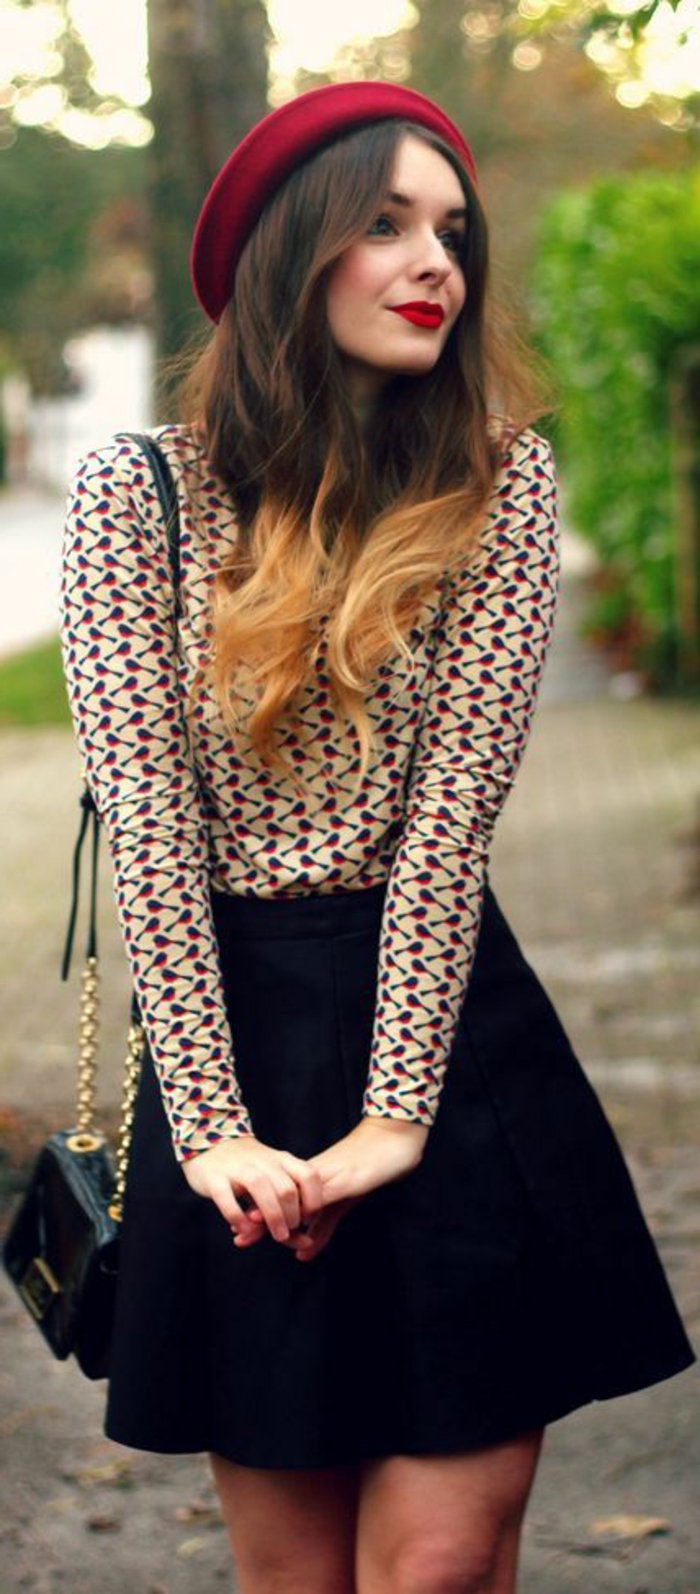 Mädchen-schicker-Outfit-Bluse-schwarzer-Rock-rote-mütze-Herbst-Mode